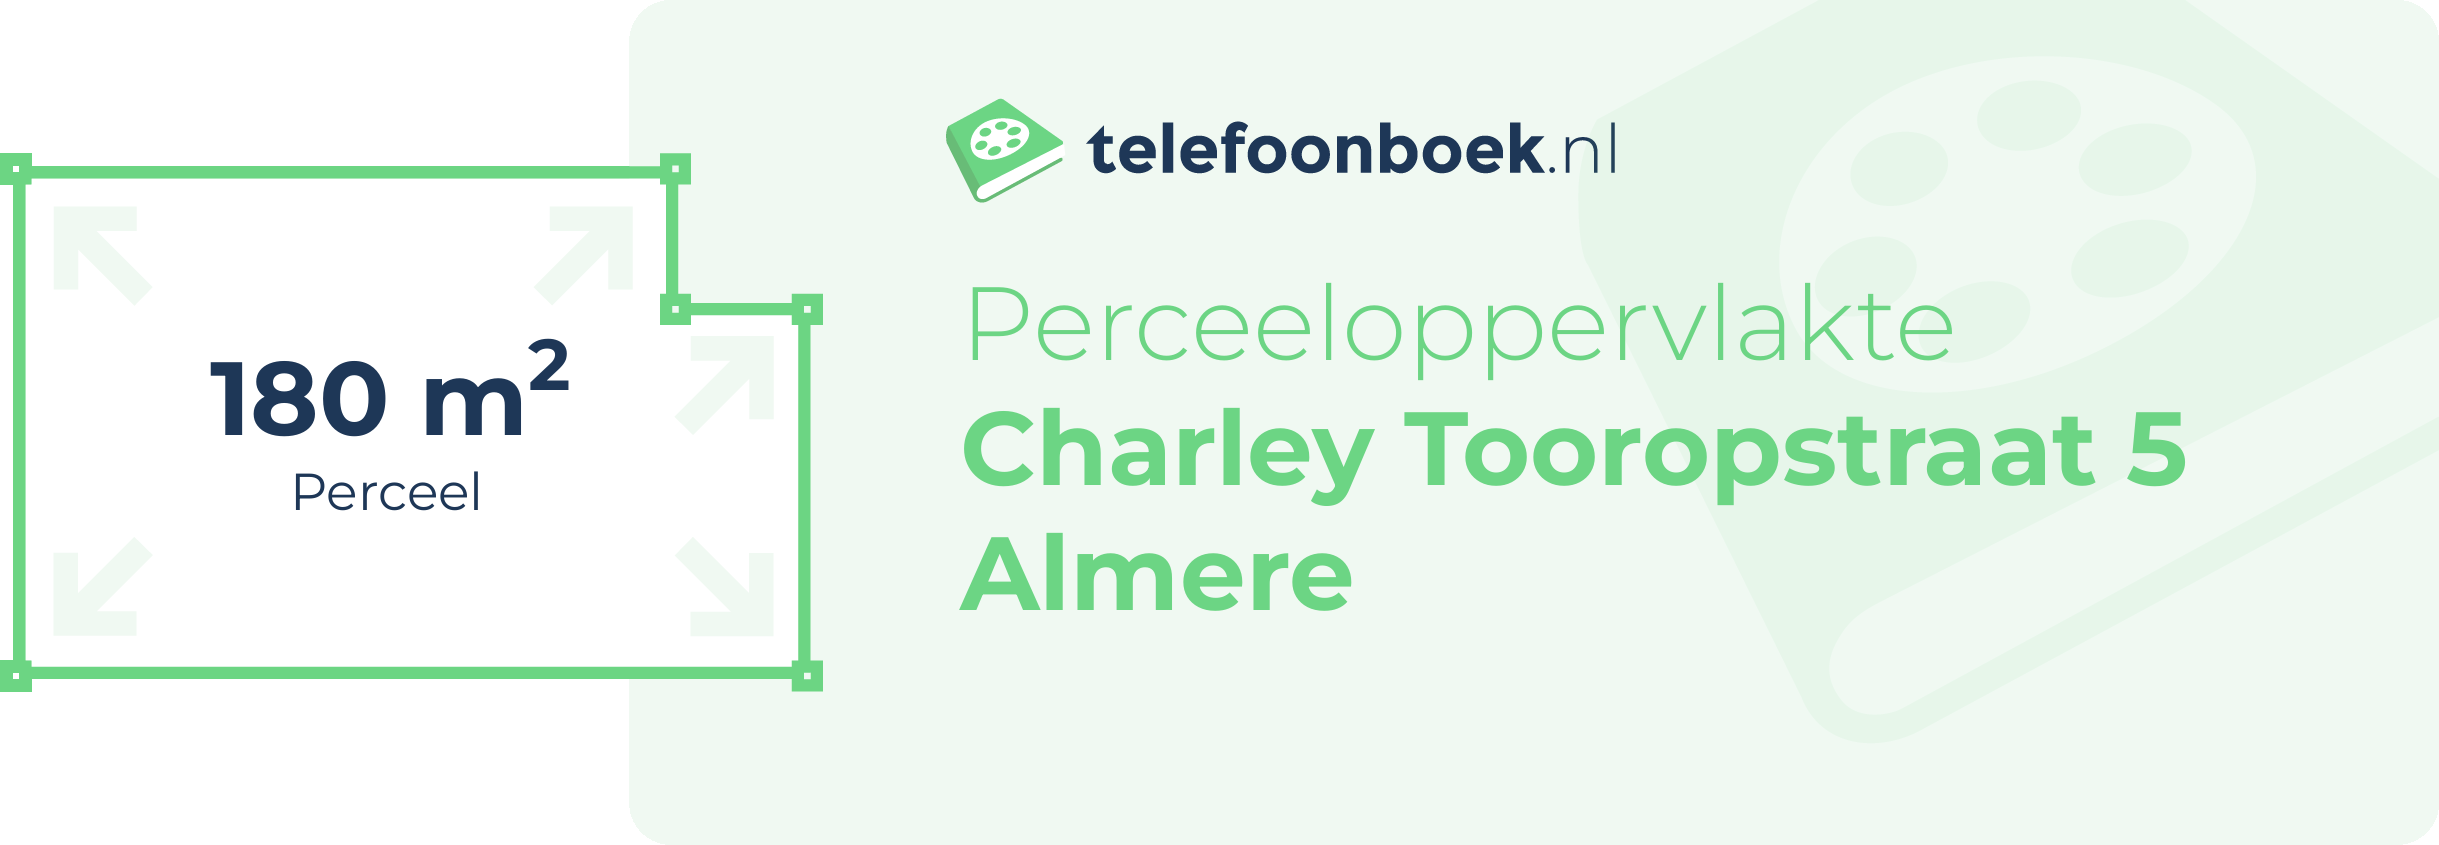 Perceeloppervlakte Charley Tooropstraat 5 Almere